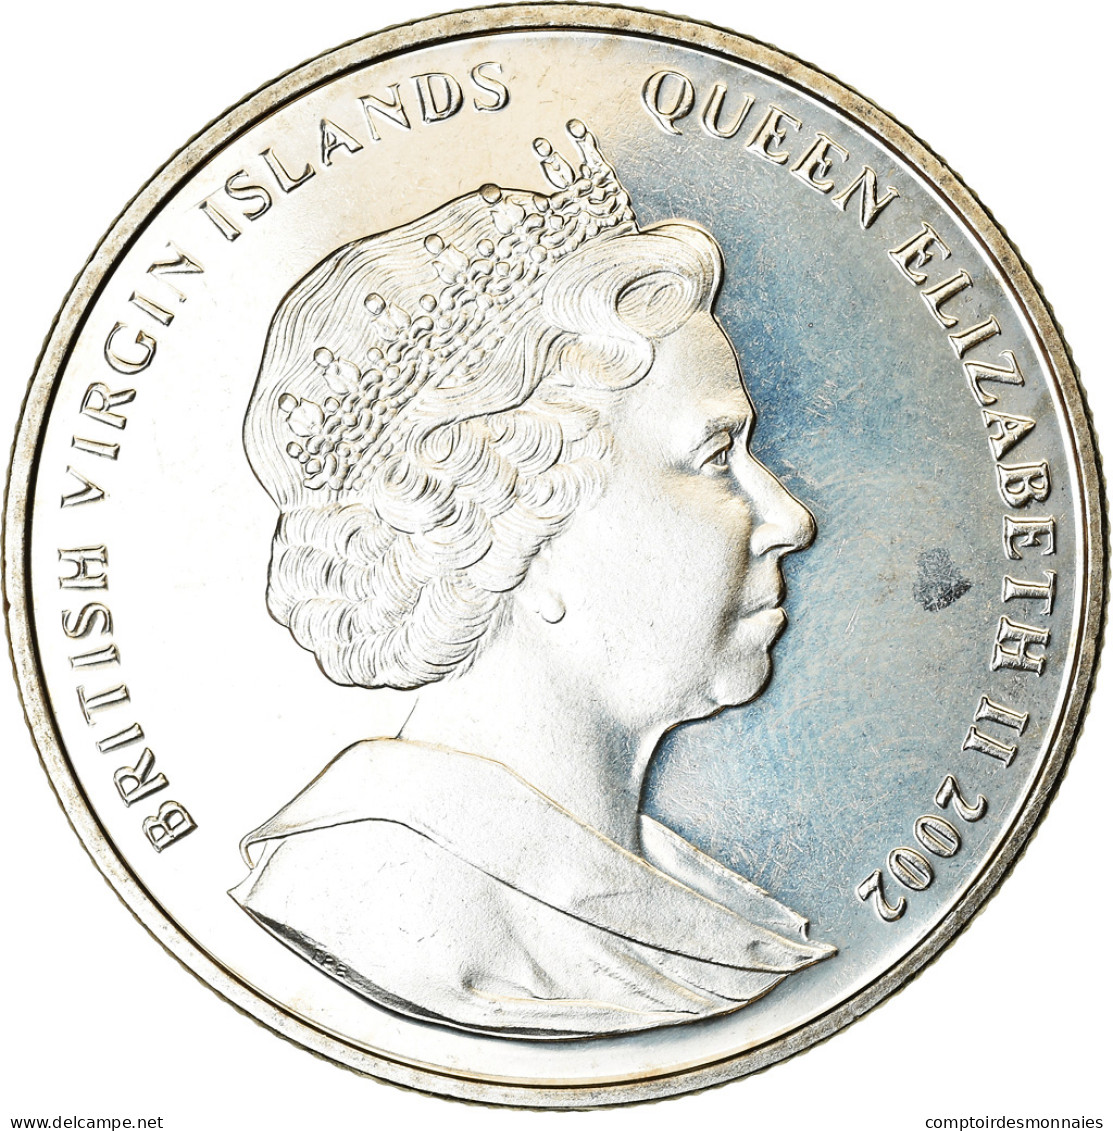 Monnaie, BRITISH VIRGIN ISLANDS, Dollar, 2002, Franklin Mint, 11 Septembre 2001 - Iles Vièrges Britanniques